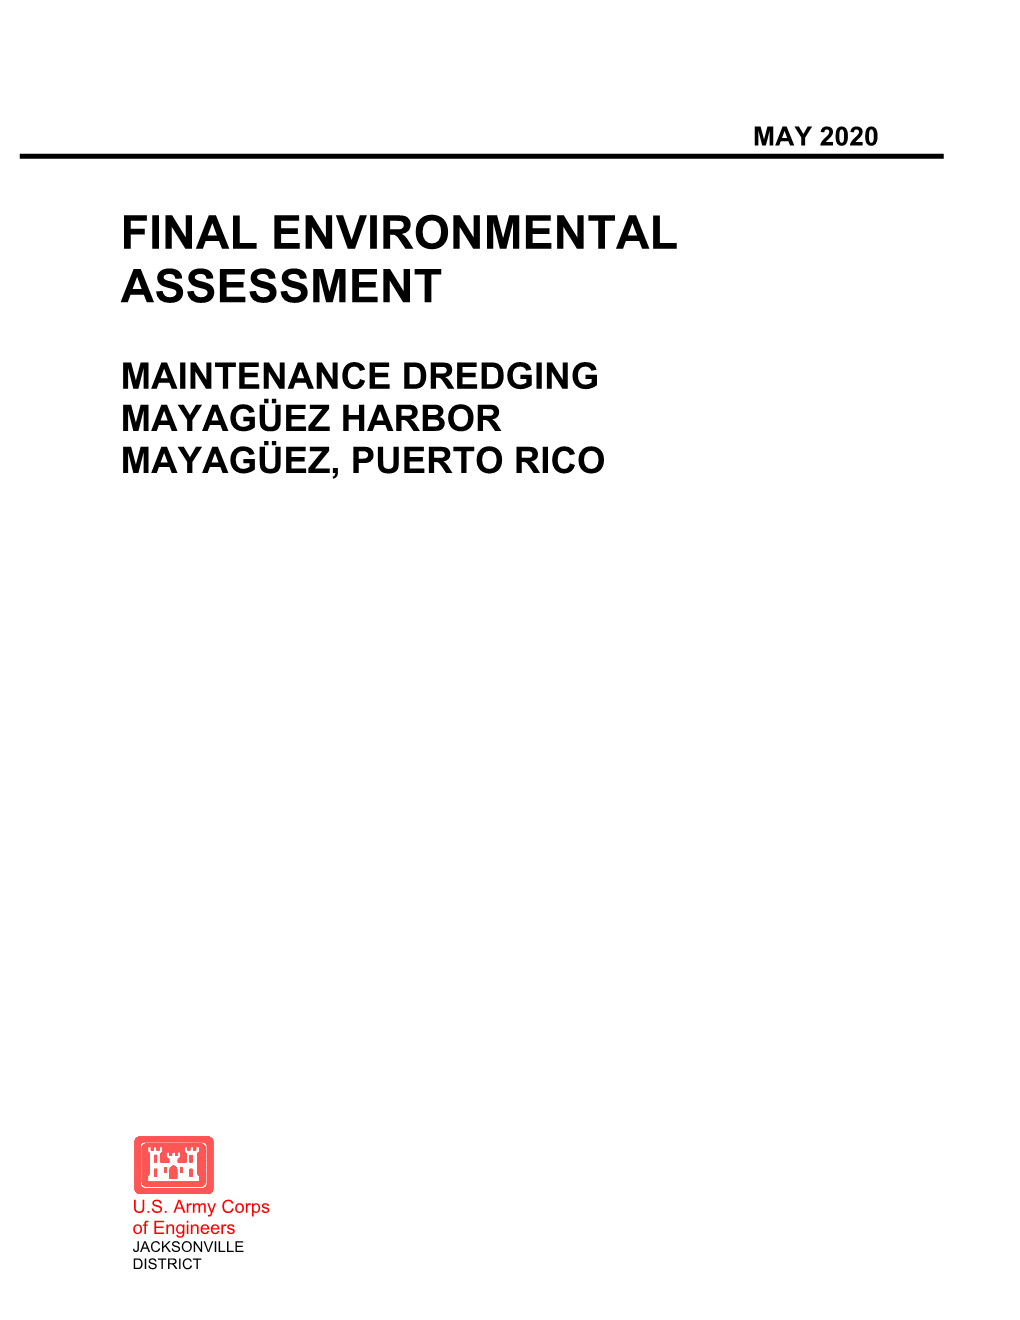 Final Environmental Assessment: Maintenance Dredging, Mayagüez